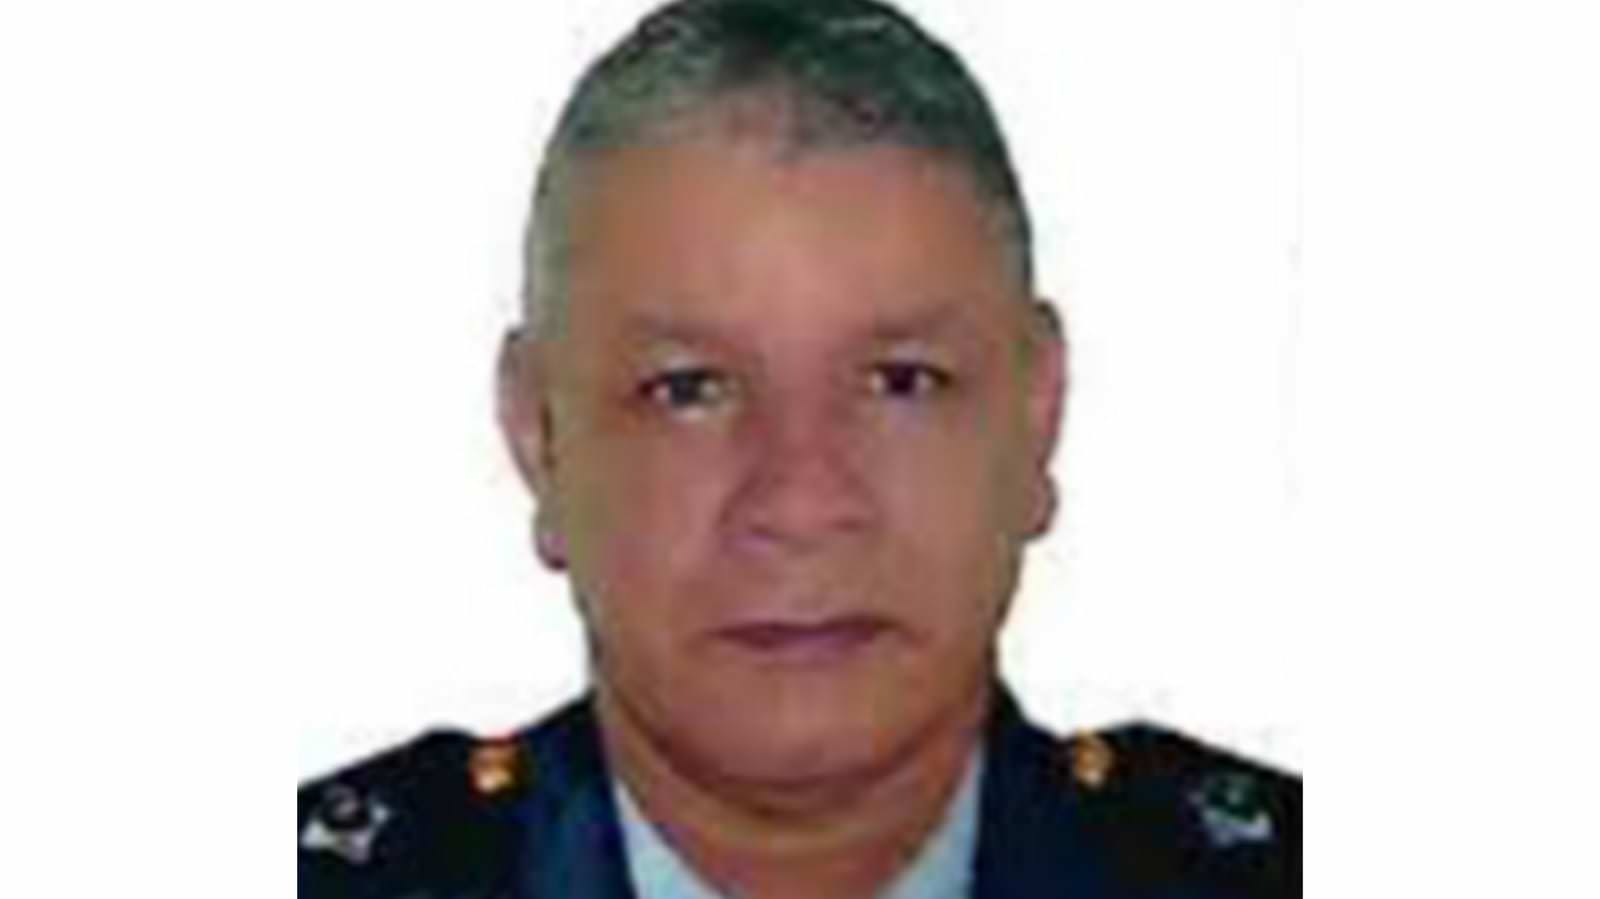 Tenente que matou policiais vai a julgamento nesta quarta em Manaus